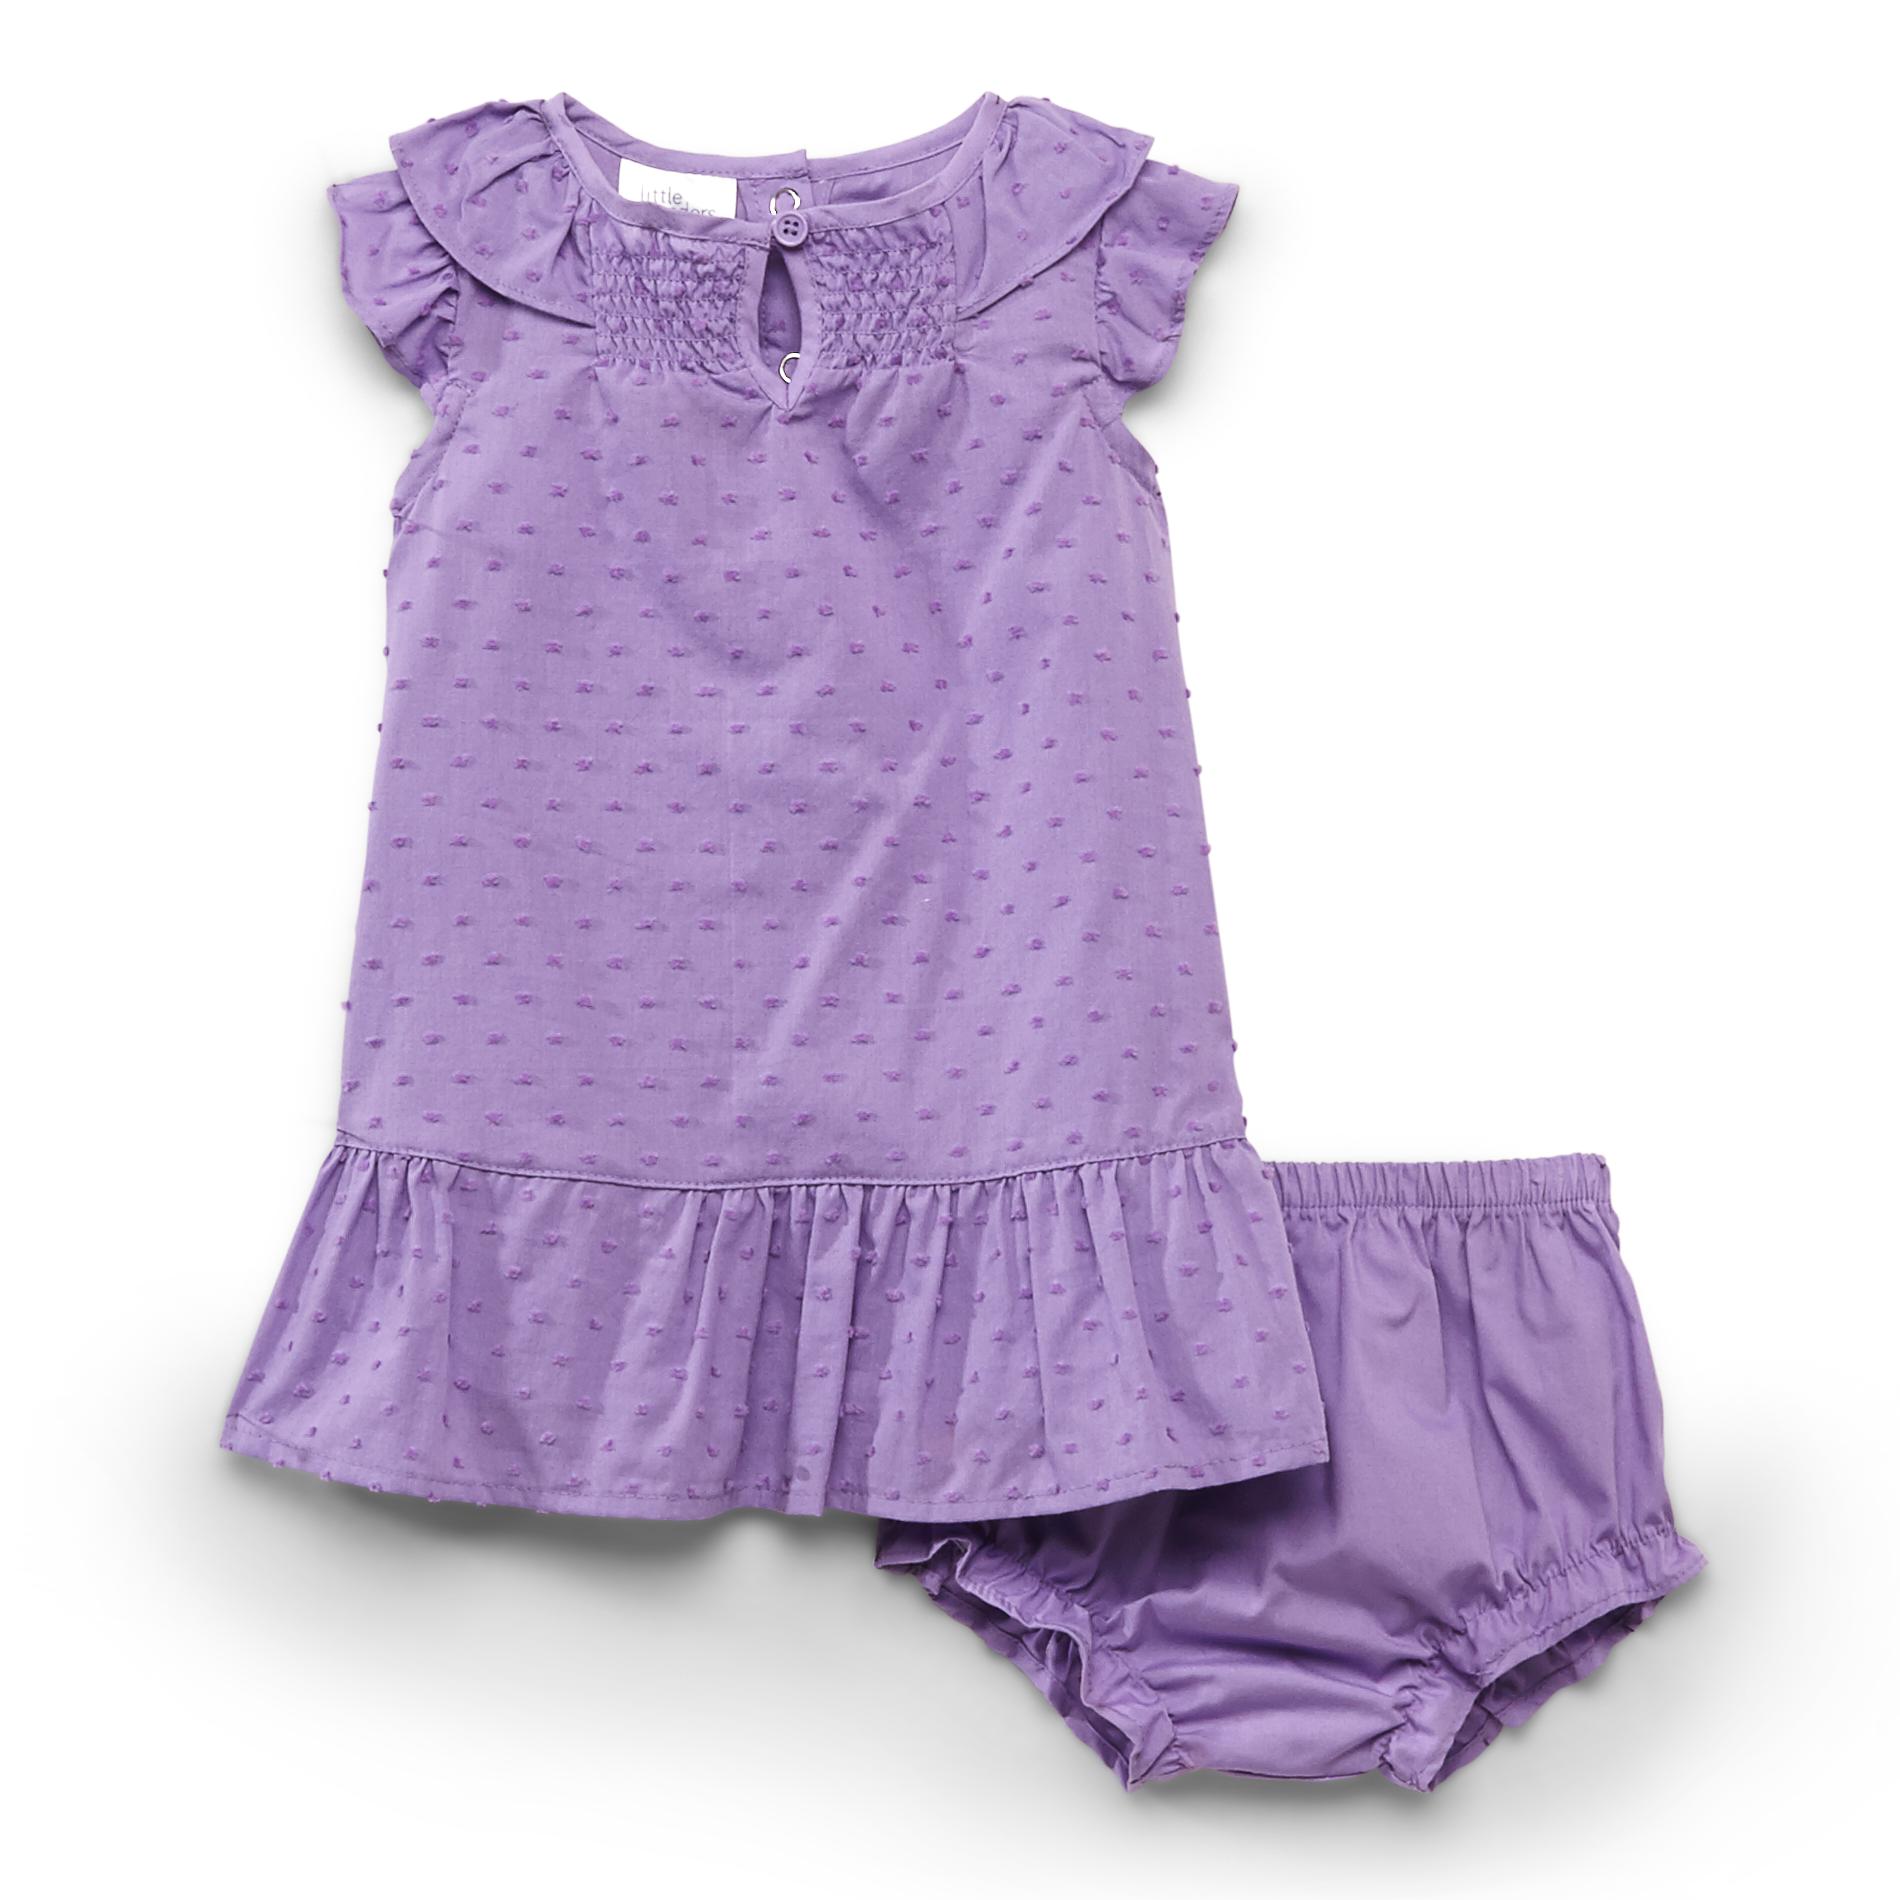 Little Wonders Newborn & Infant Girl's Swiss Dot Dress & Diaper Cover